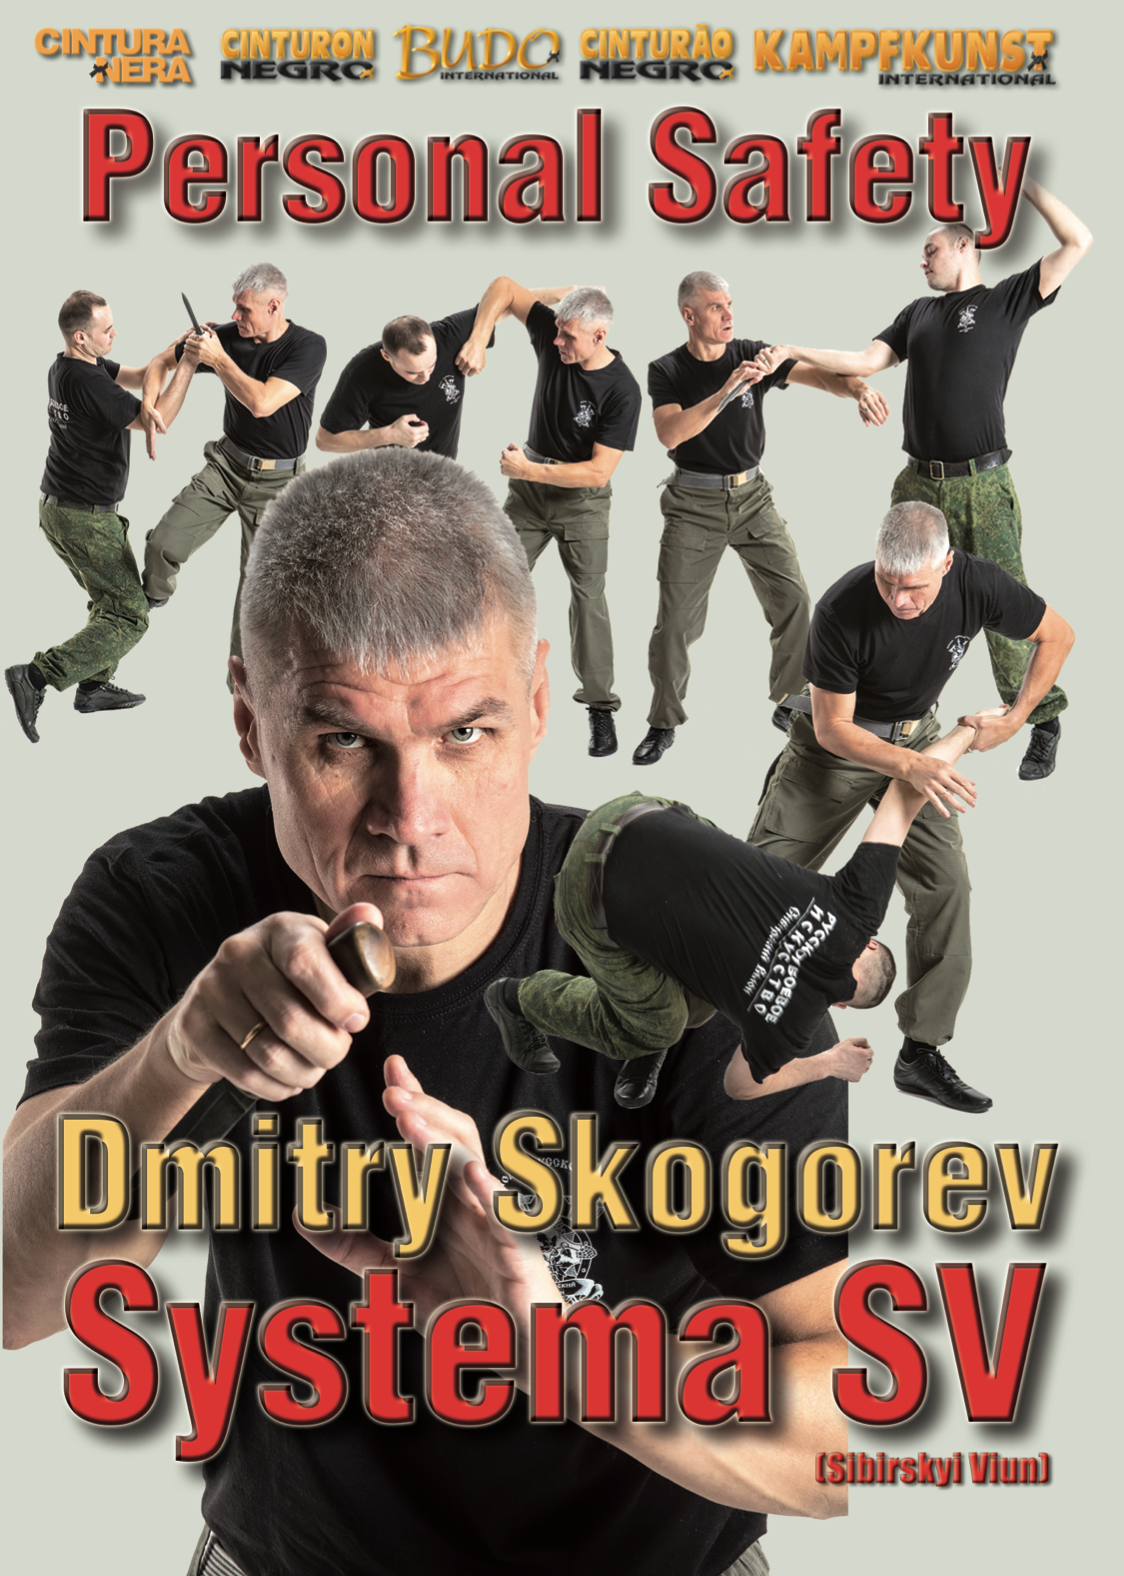 RMA Systema SV Self Defense with Everyday Items DVD by Dmitry Skogorev